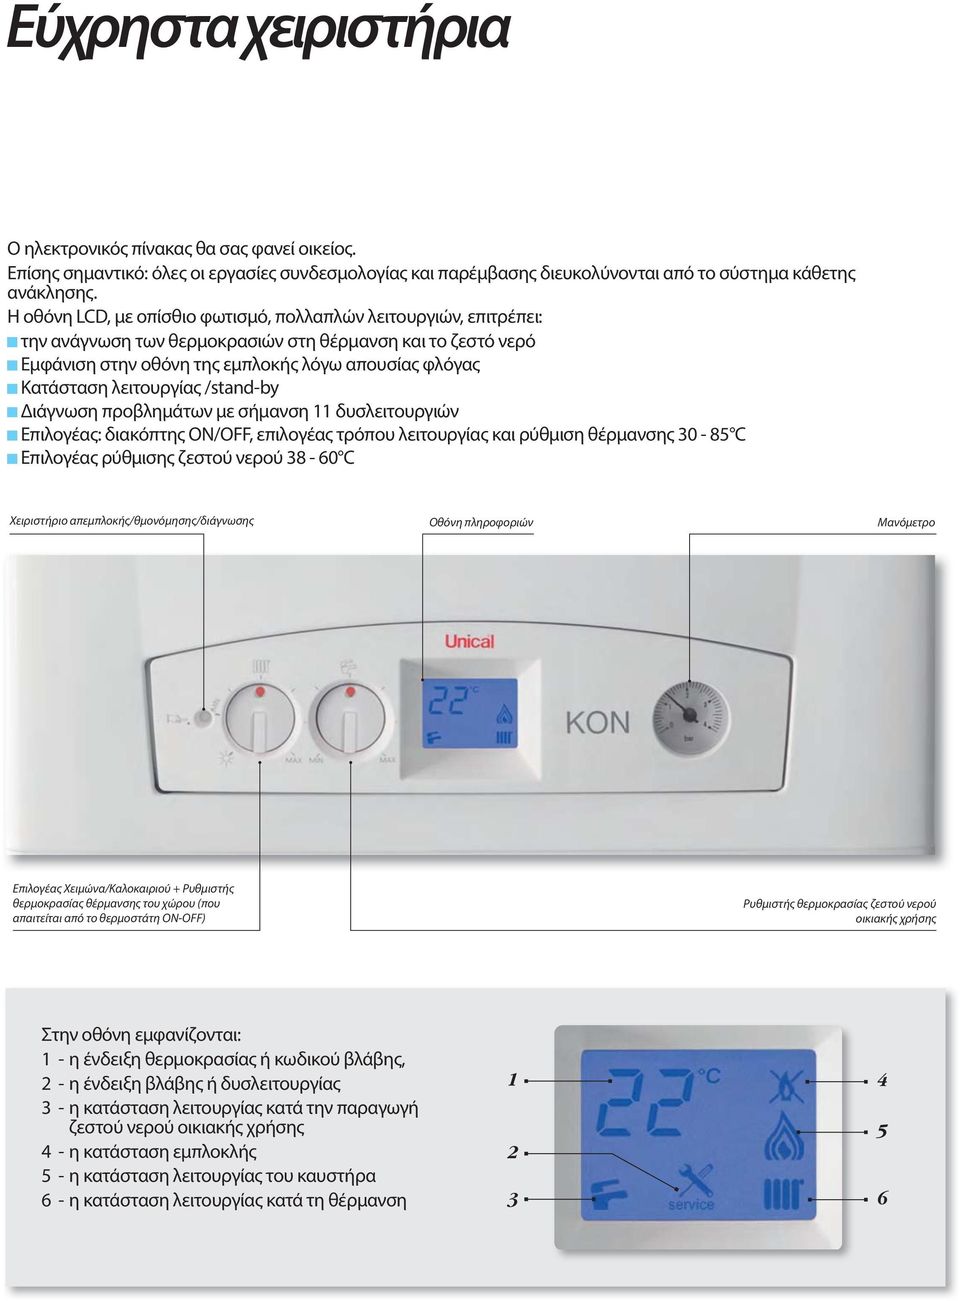 λειτουργίας /stand-by Διάγνωση προβλημάτων με σήμανση 11 δυσλειτουργιών Επιλογέας: διακόπτης ON/OFF, επιλογέας τρόπου λειτουργίας και ρύθμιση θέρμανσης 30-85 C Επιλογέας ρύθμισης ζεστού νερού 38-60 C